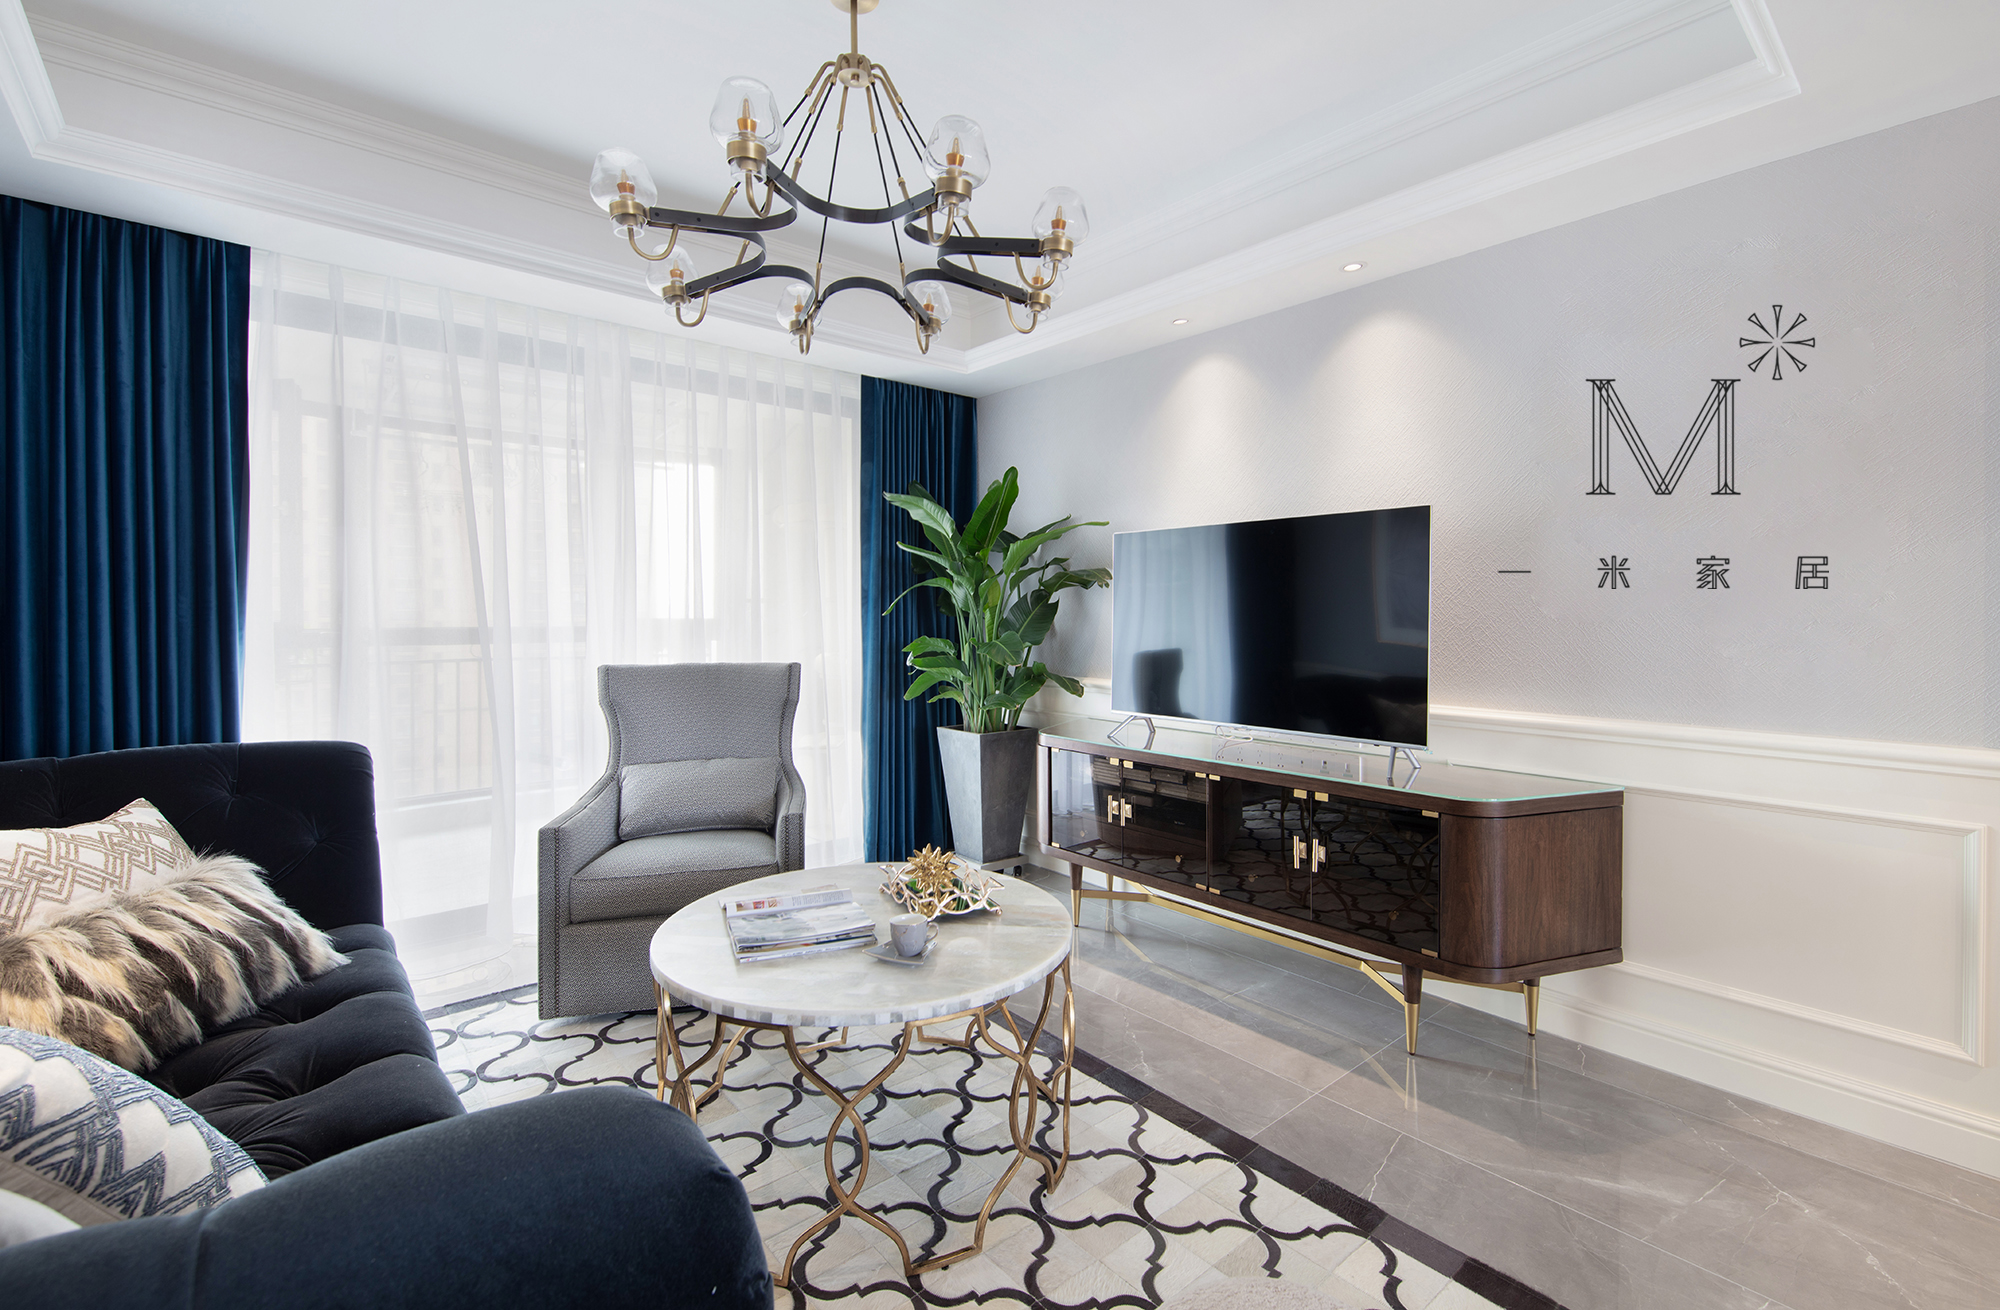 客厅窗帘2装修效果图130㎡低奢美式客厅吊灯图美式经典客厅设计图片赏析